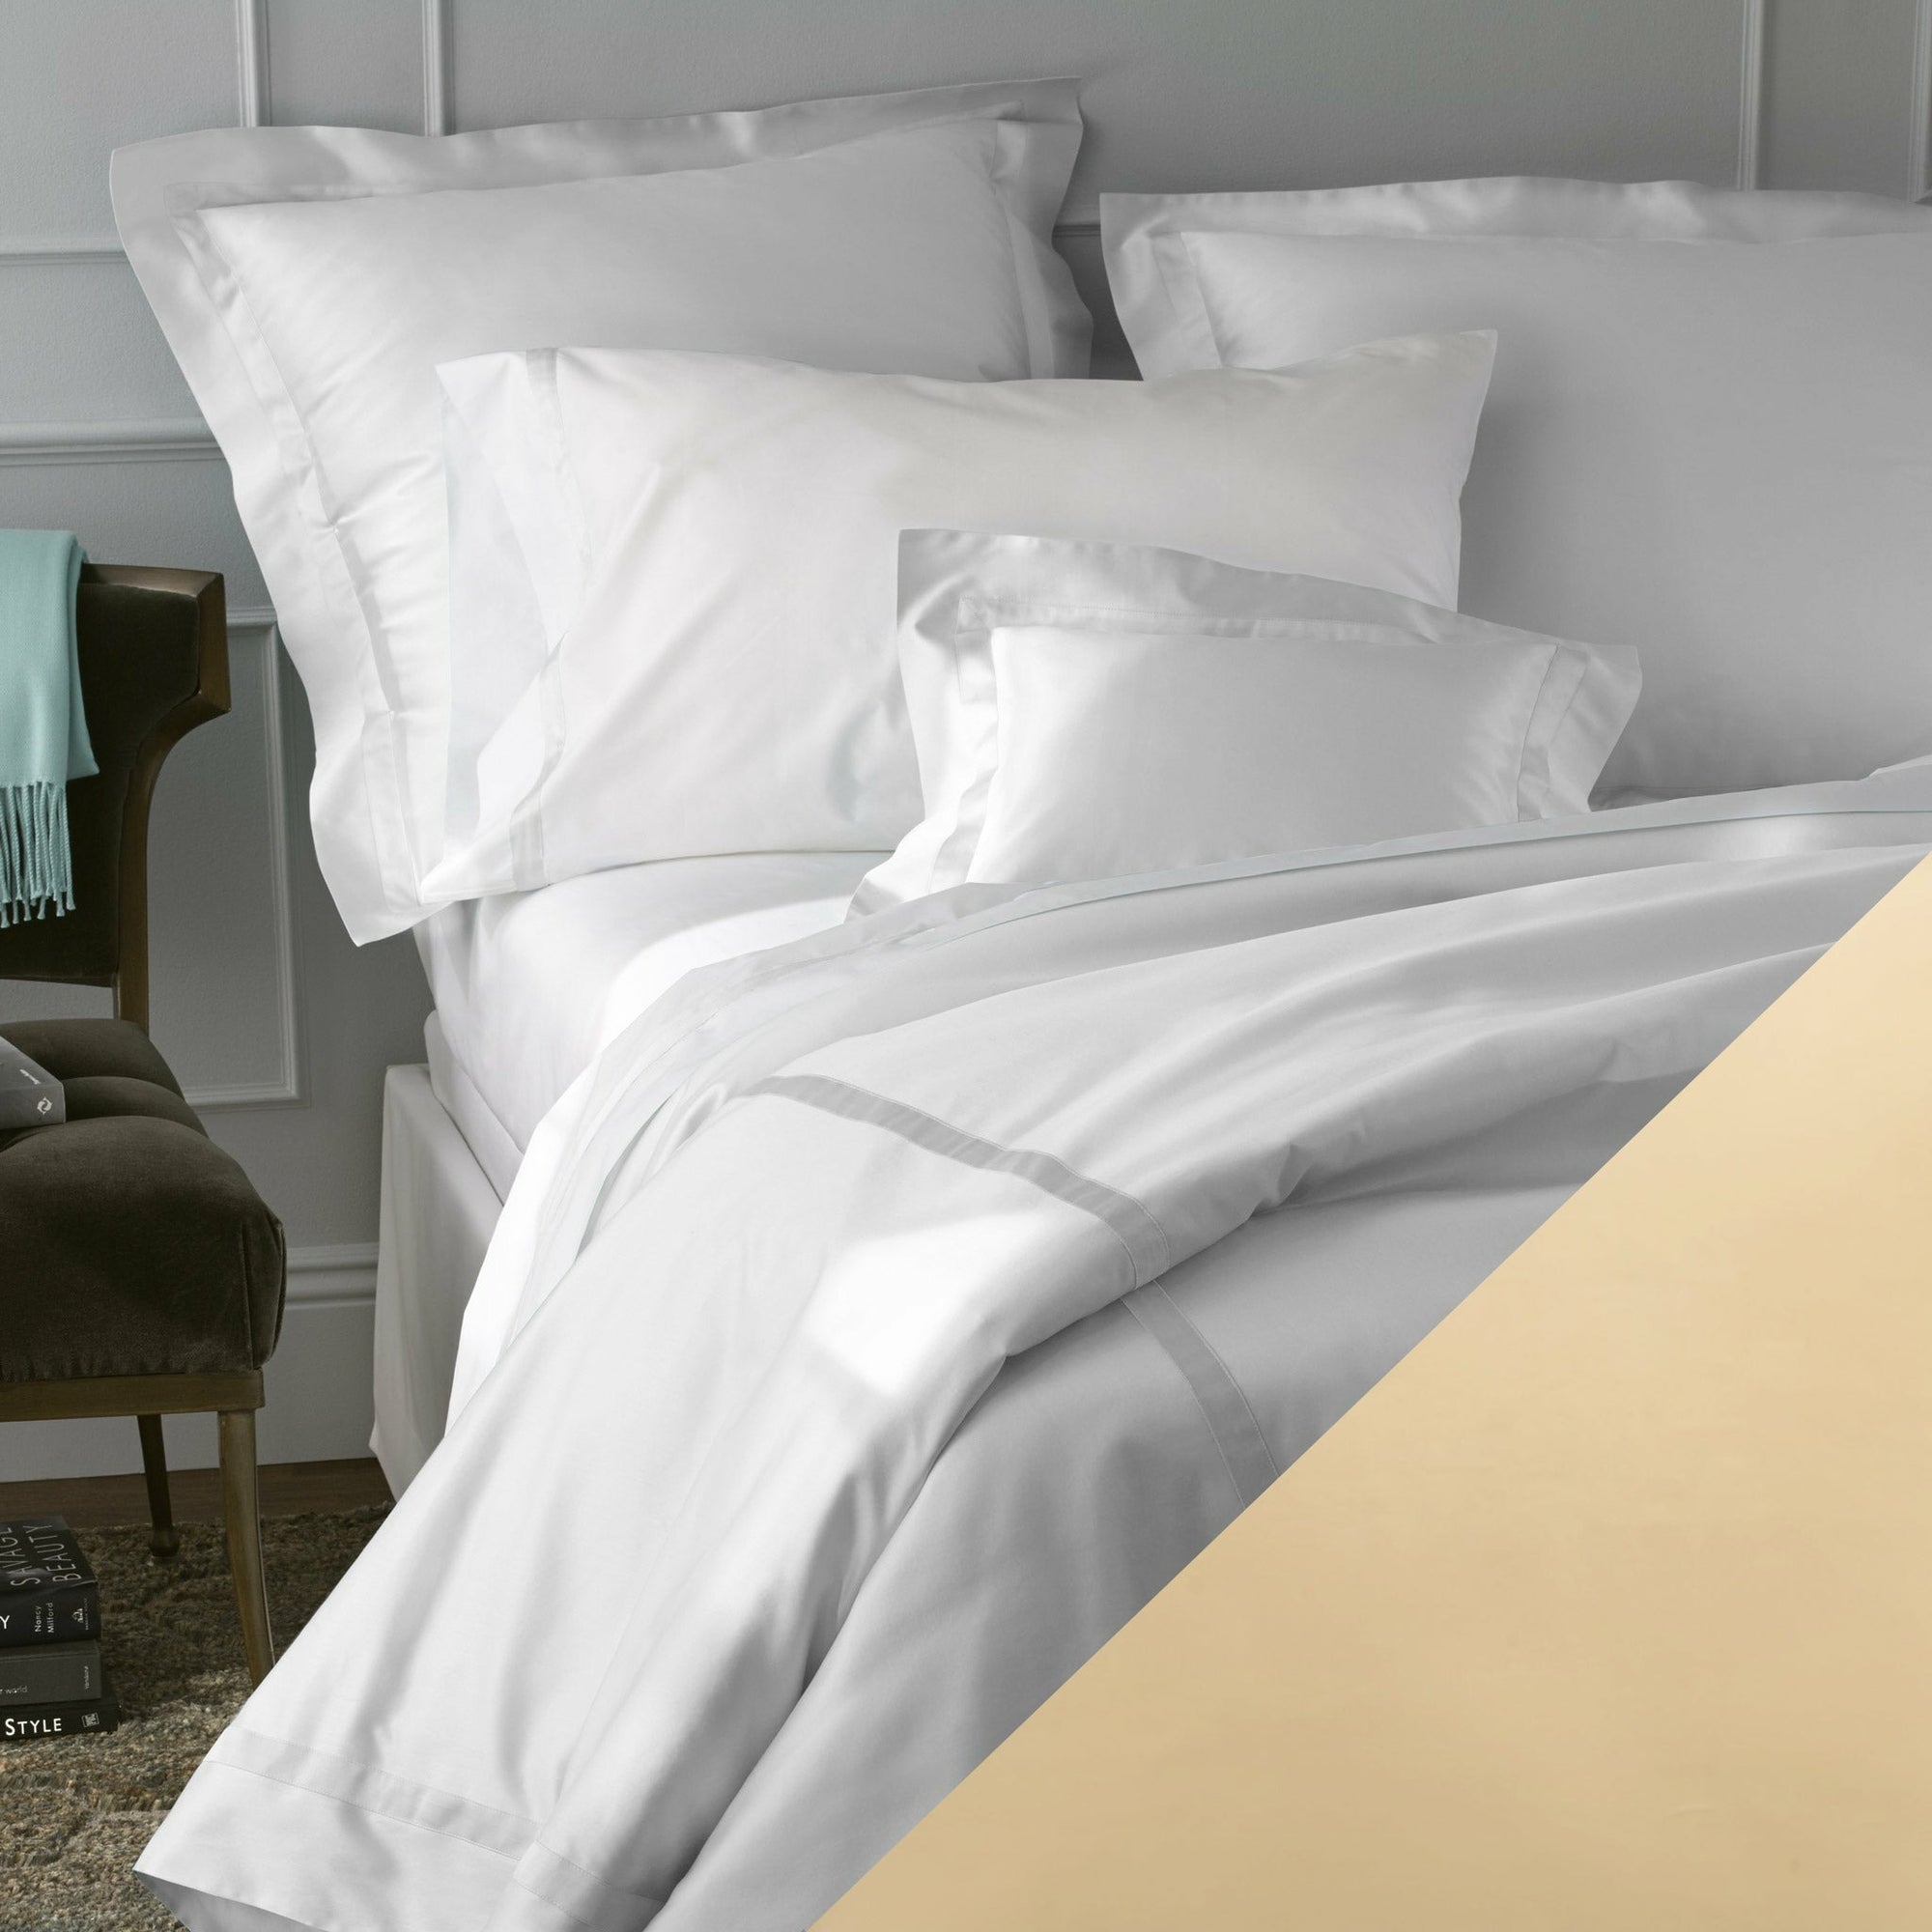 Matouk Honey Nocturne Bedding Sheets Pillow Cases Shams Fine Linens